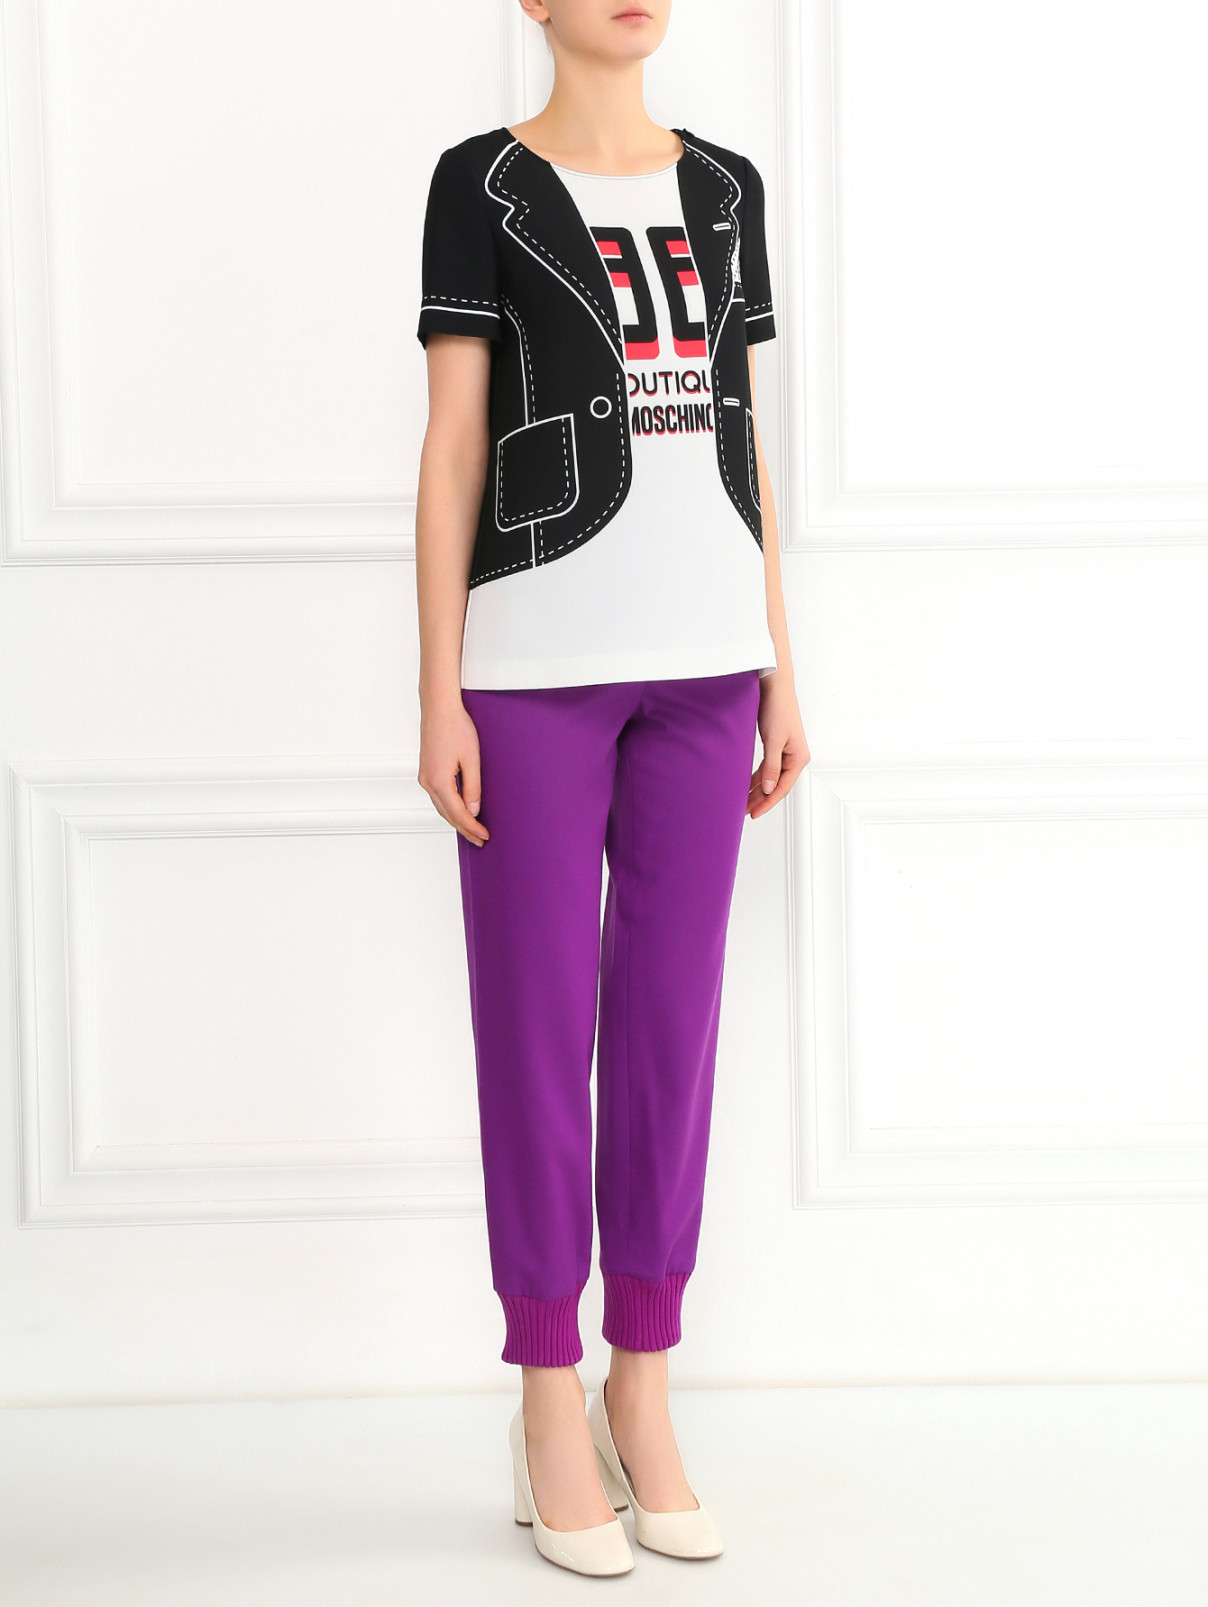 Свободные брюки из шерсти с манжетами Moschino Boutique  –  Модель Общий вид  – Цвет:  Фиолетовый